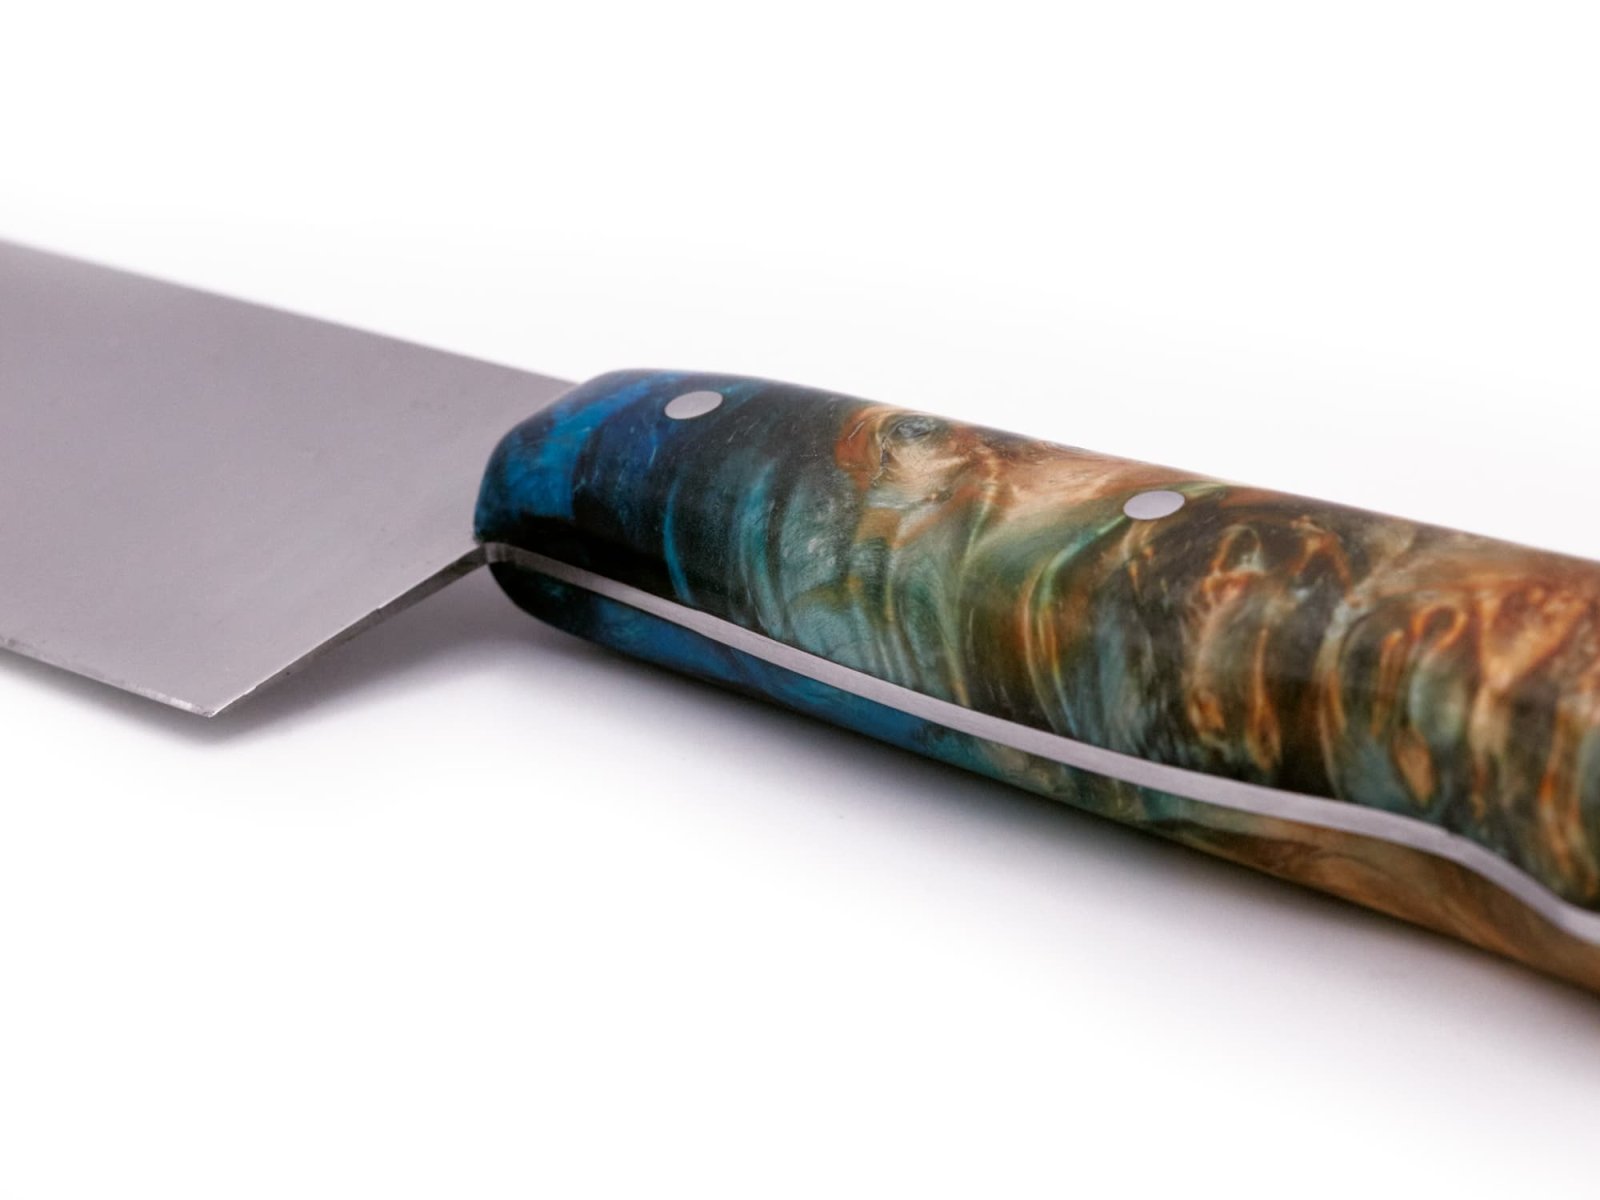 rostfreies Kochmesser - Einzelstück - bestes Messer für die Küche